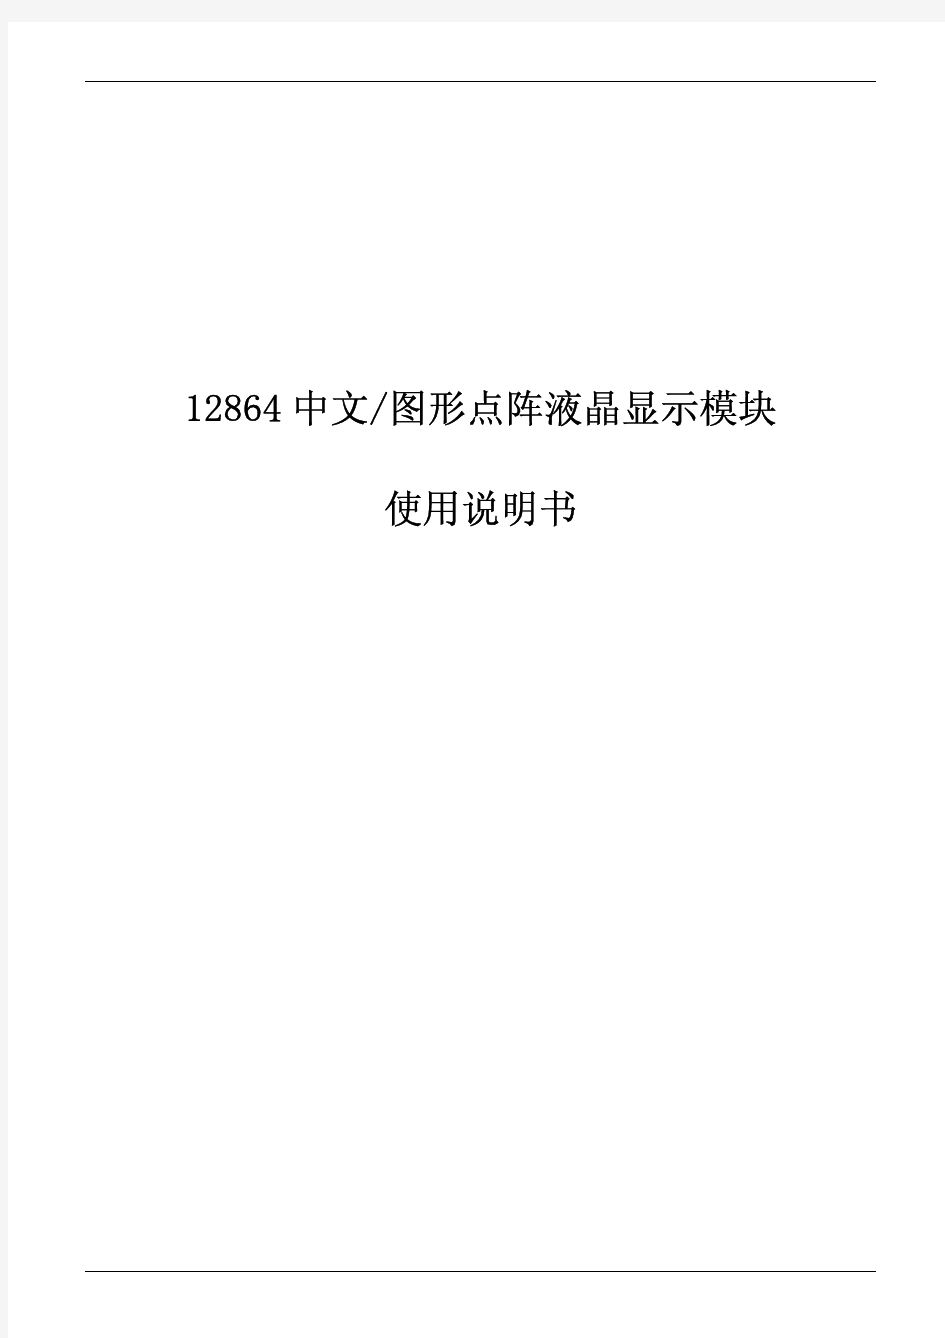 12864中文图形点阵液晶显示模块使用说明书